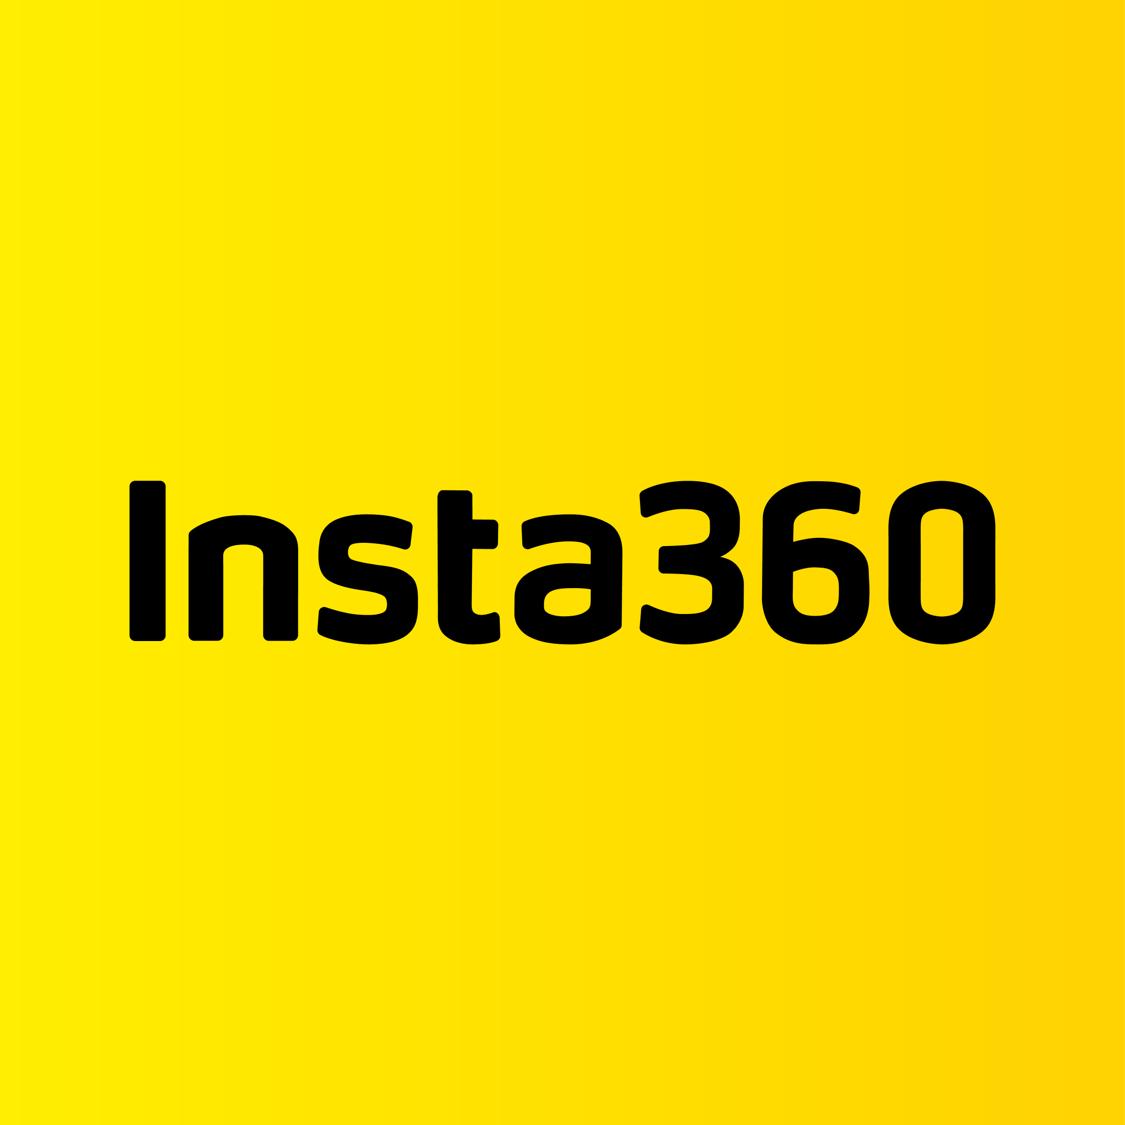 Insta360 's images